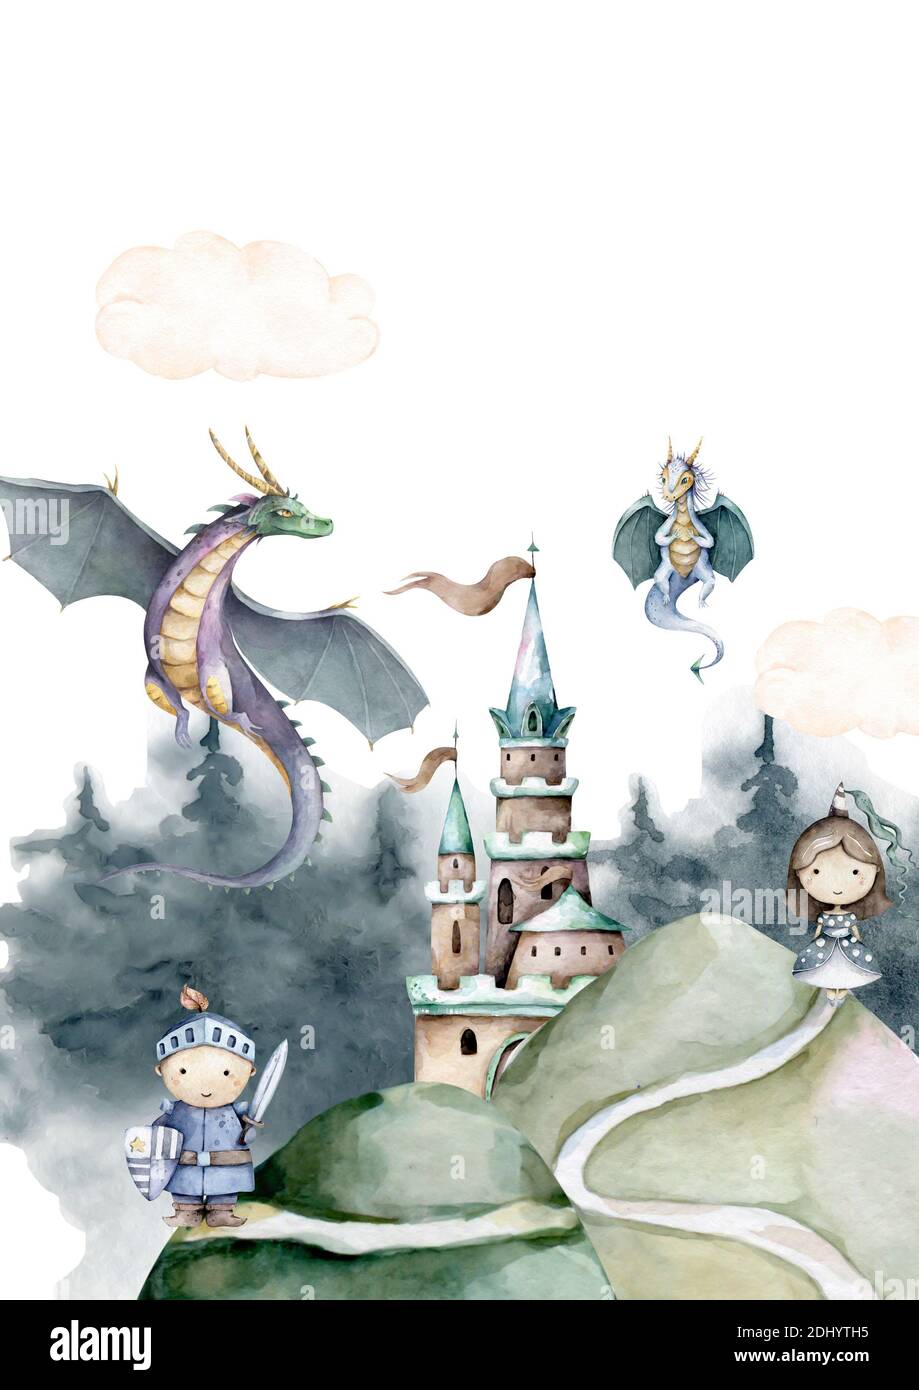 Vinilo infantil - Dragón con princesa y caballero (*‿*)